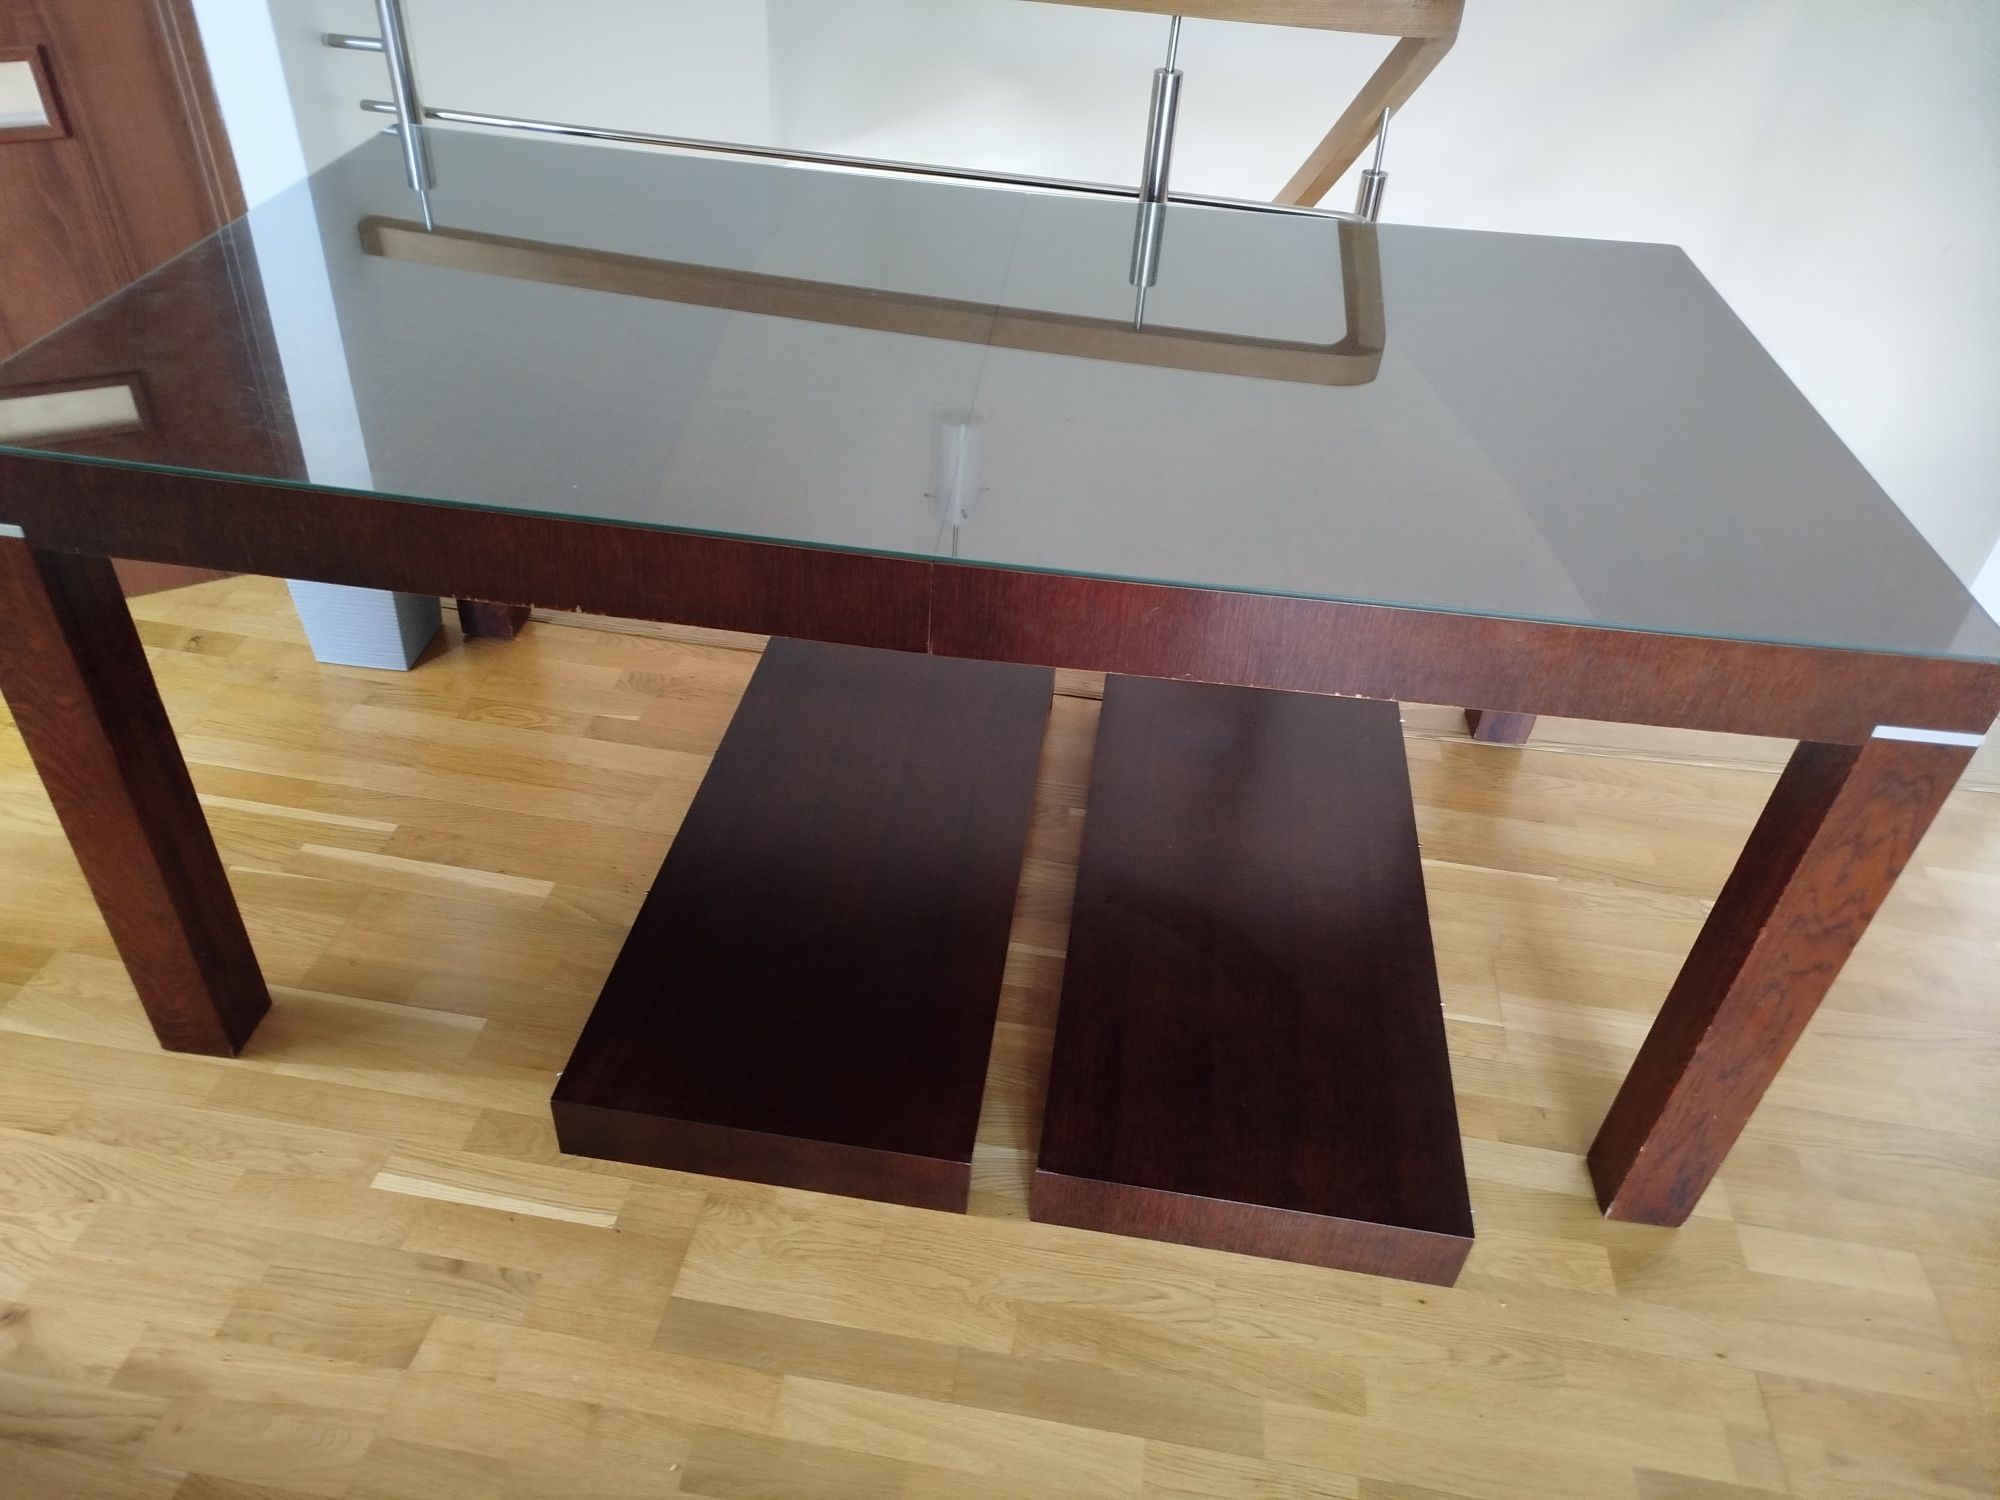 Stół drewniany ciężki solidny rozkładany , szyba gratis